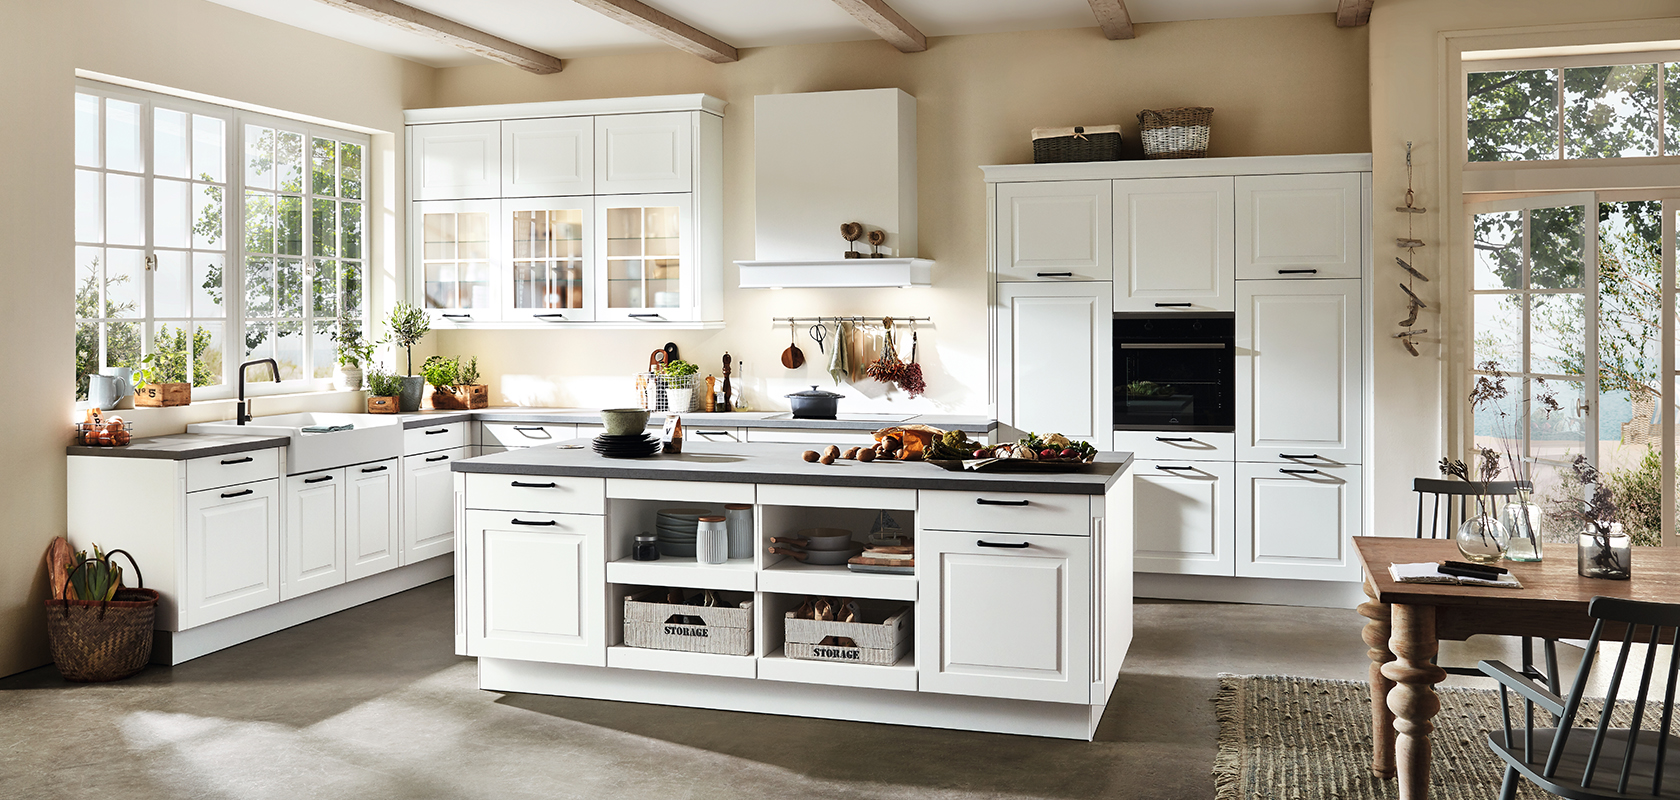 Amplio interior de cocina con gabinetes blancos, encimeras negras, electrodomésticos modernos y una isla central bañada por luz natural de grandes ventanas.